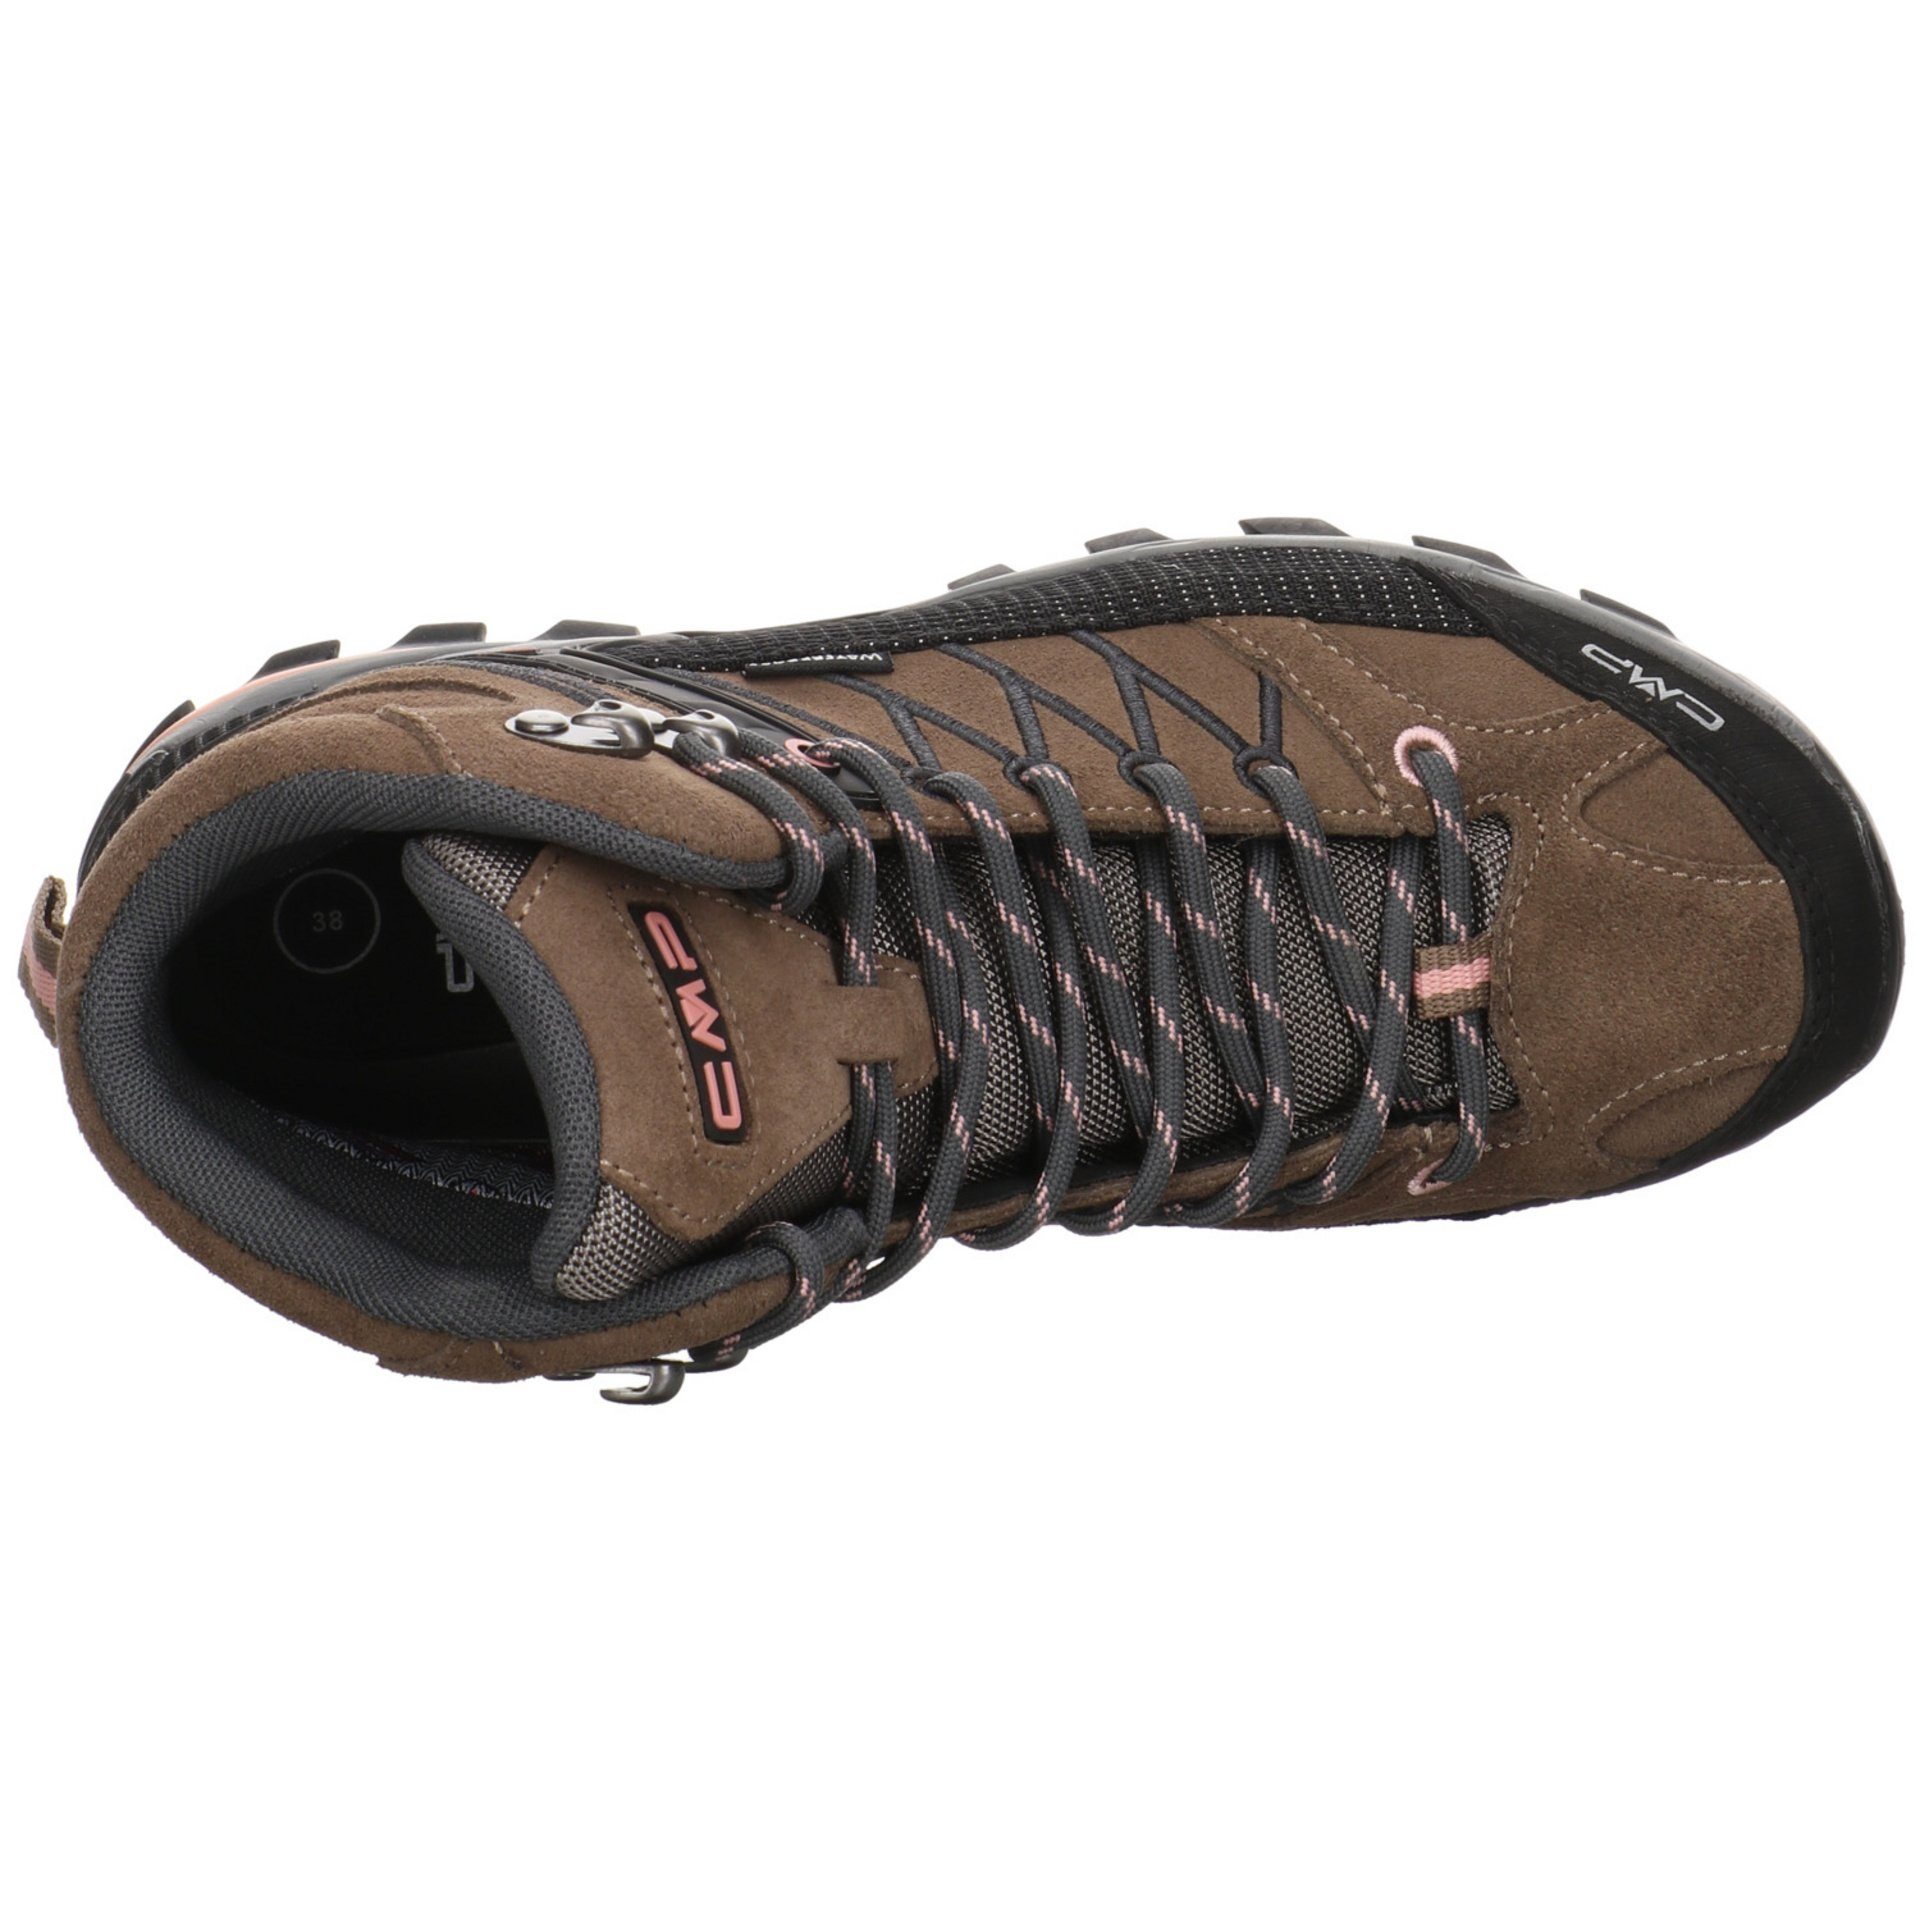 Outdoorschuh Rigel Leder-/Textilkombination Mid CMP Damen CENERE Outdoorschuh Outdoor Schuhe